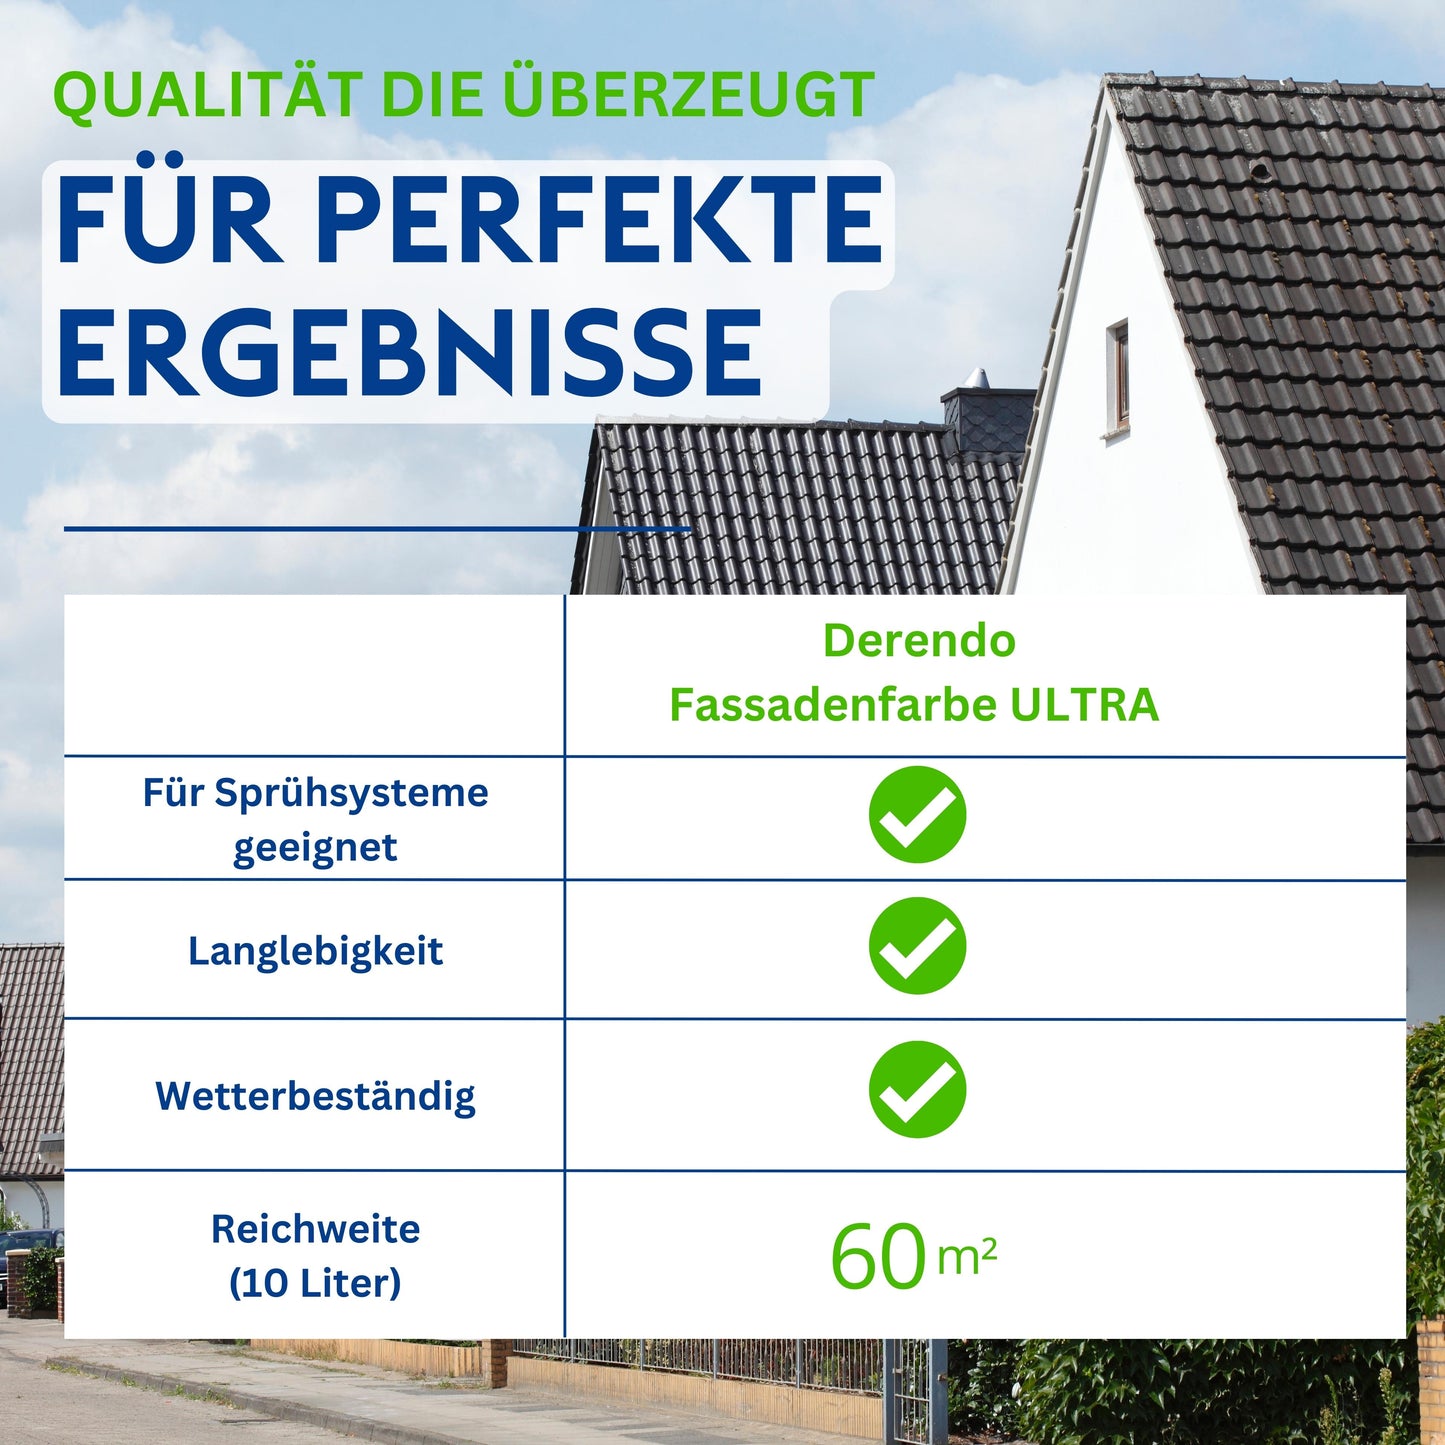 Derendo Fassadenfarbe Himmelblau mit ULTRA Wetterschutz und Abperleffekt